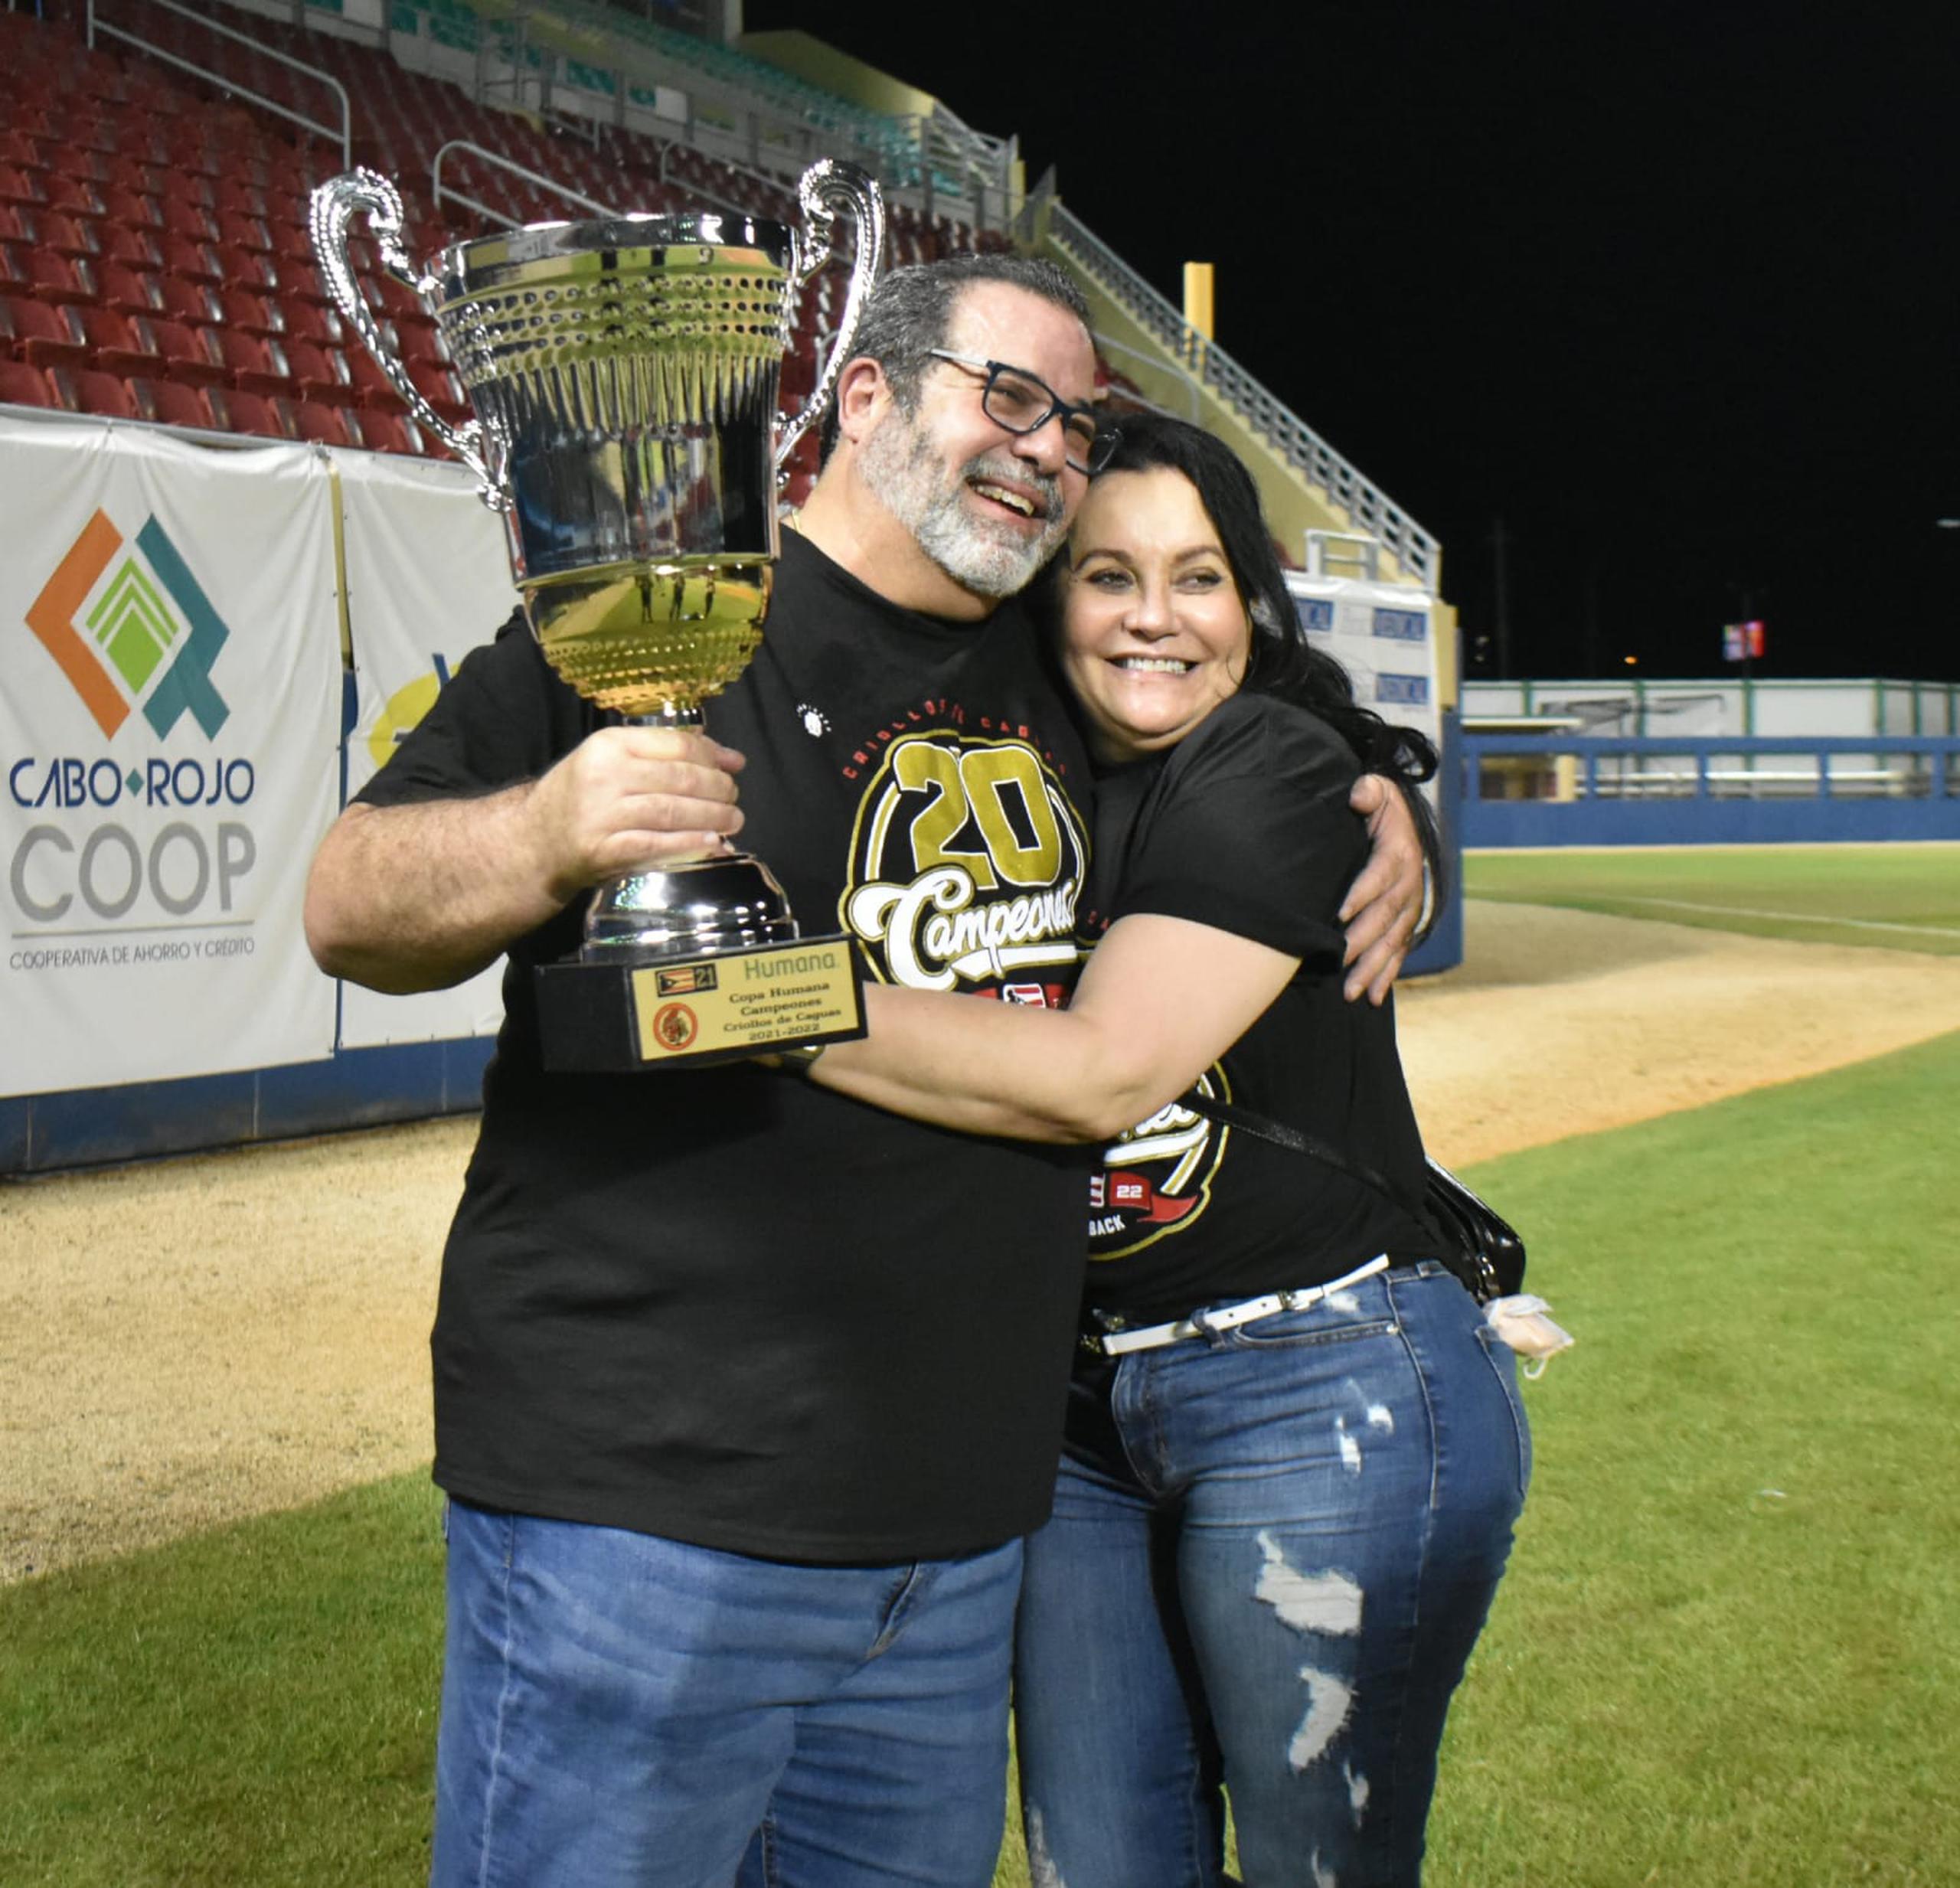 El propietario de los Criollos de Caguas, Raúl Rodríguez, aquí con su esposa Mildred Quirós, logró el jueves su sexto campeonato como presidente de la franquicia.